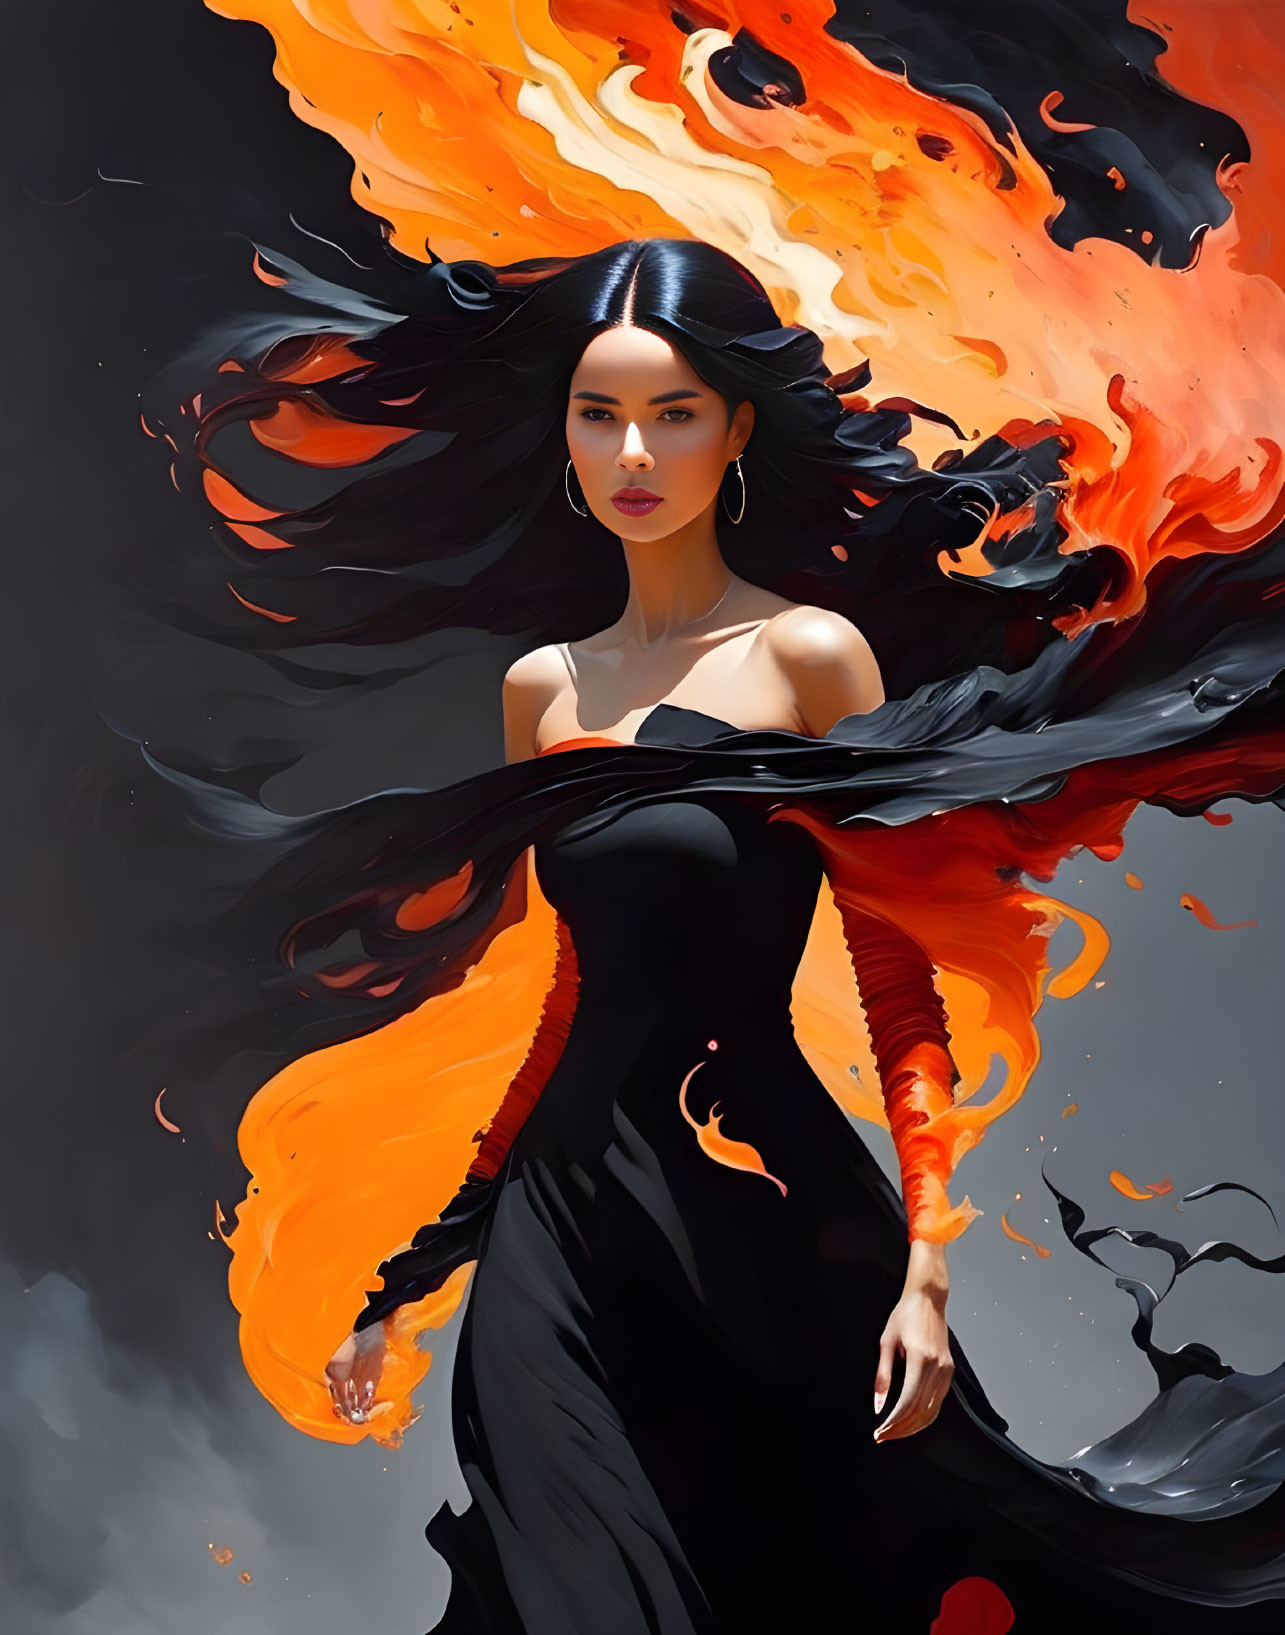 Mystical woman in black dress with fiery swirls